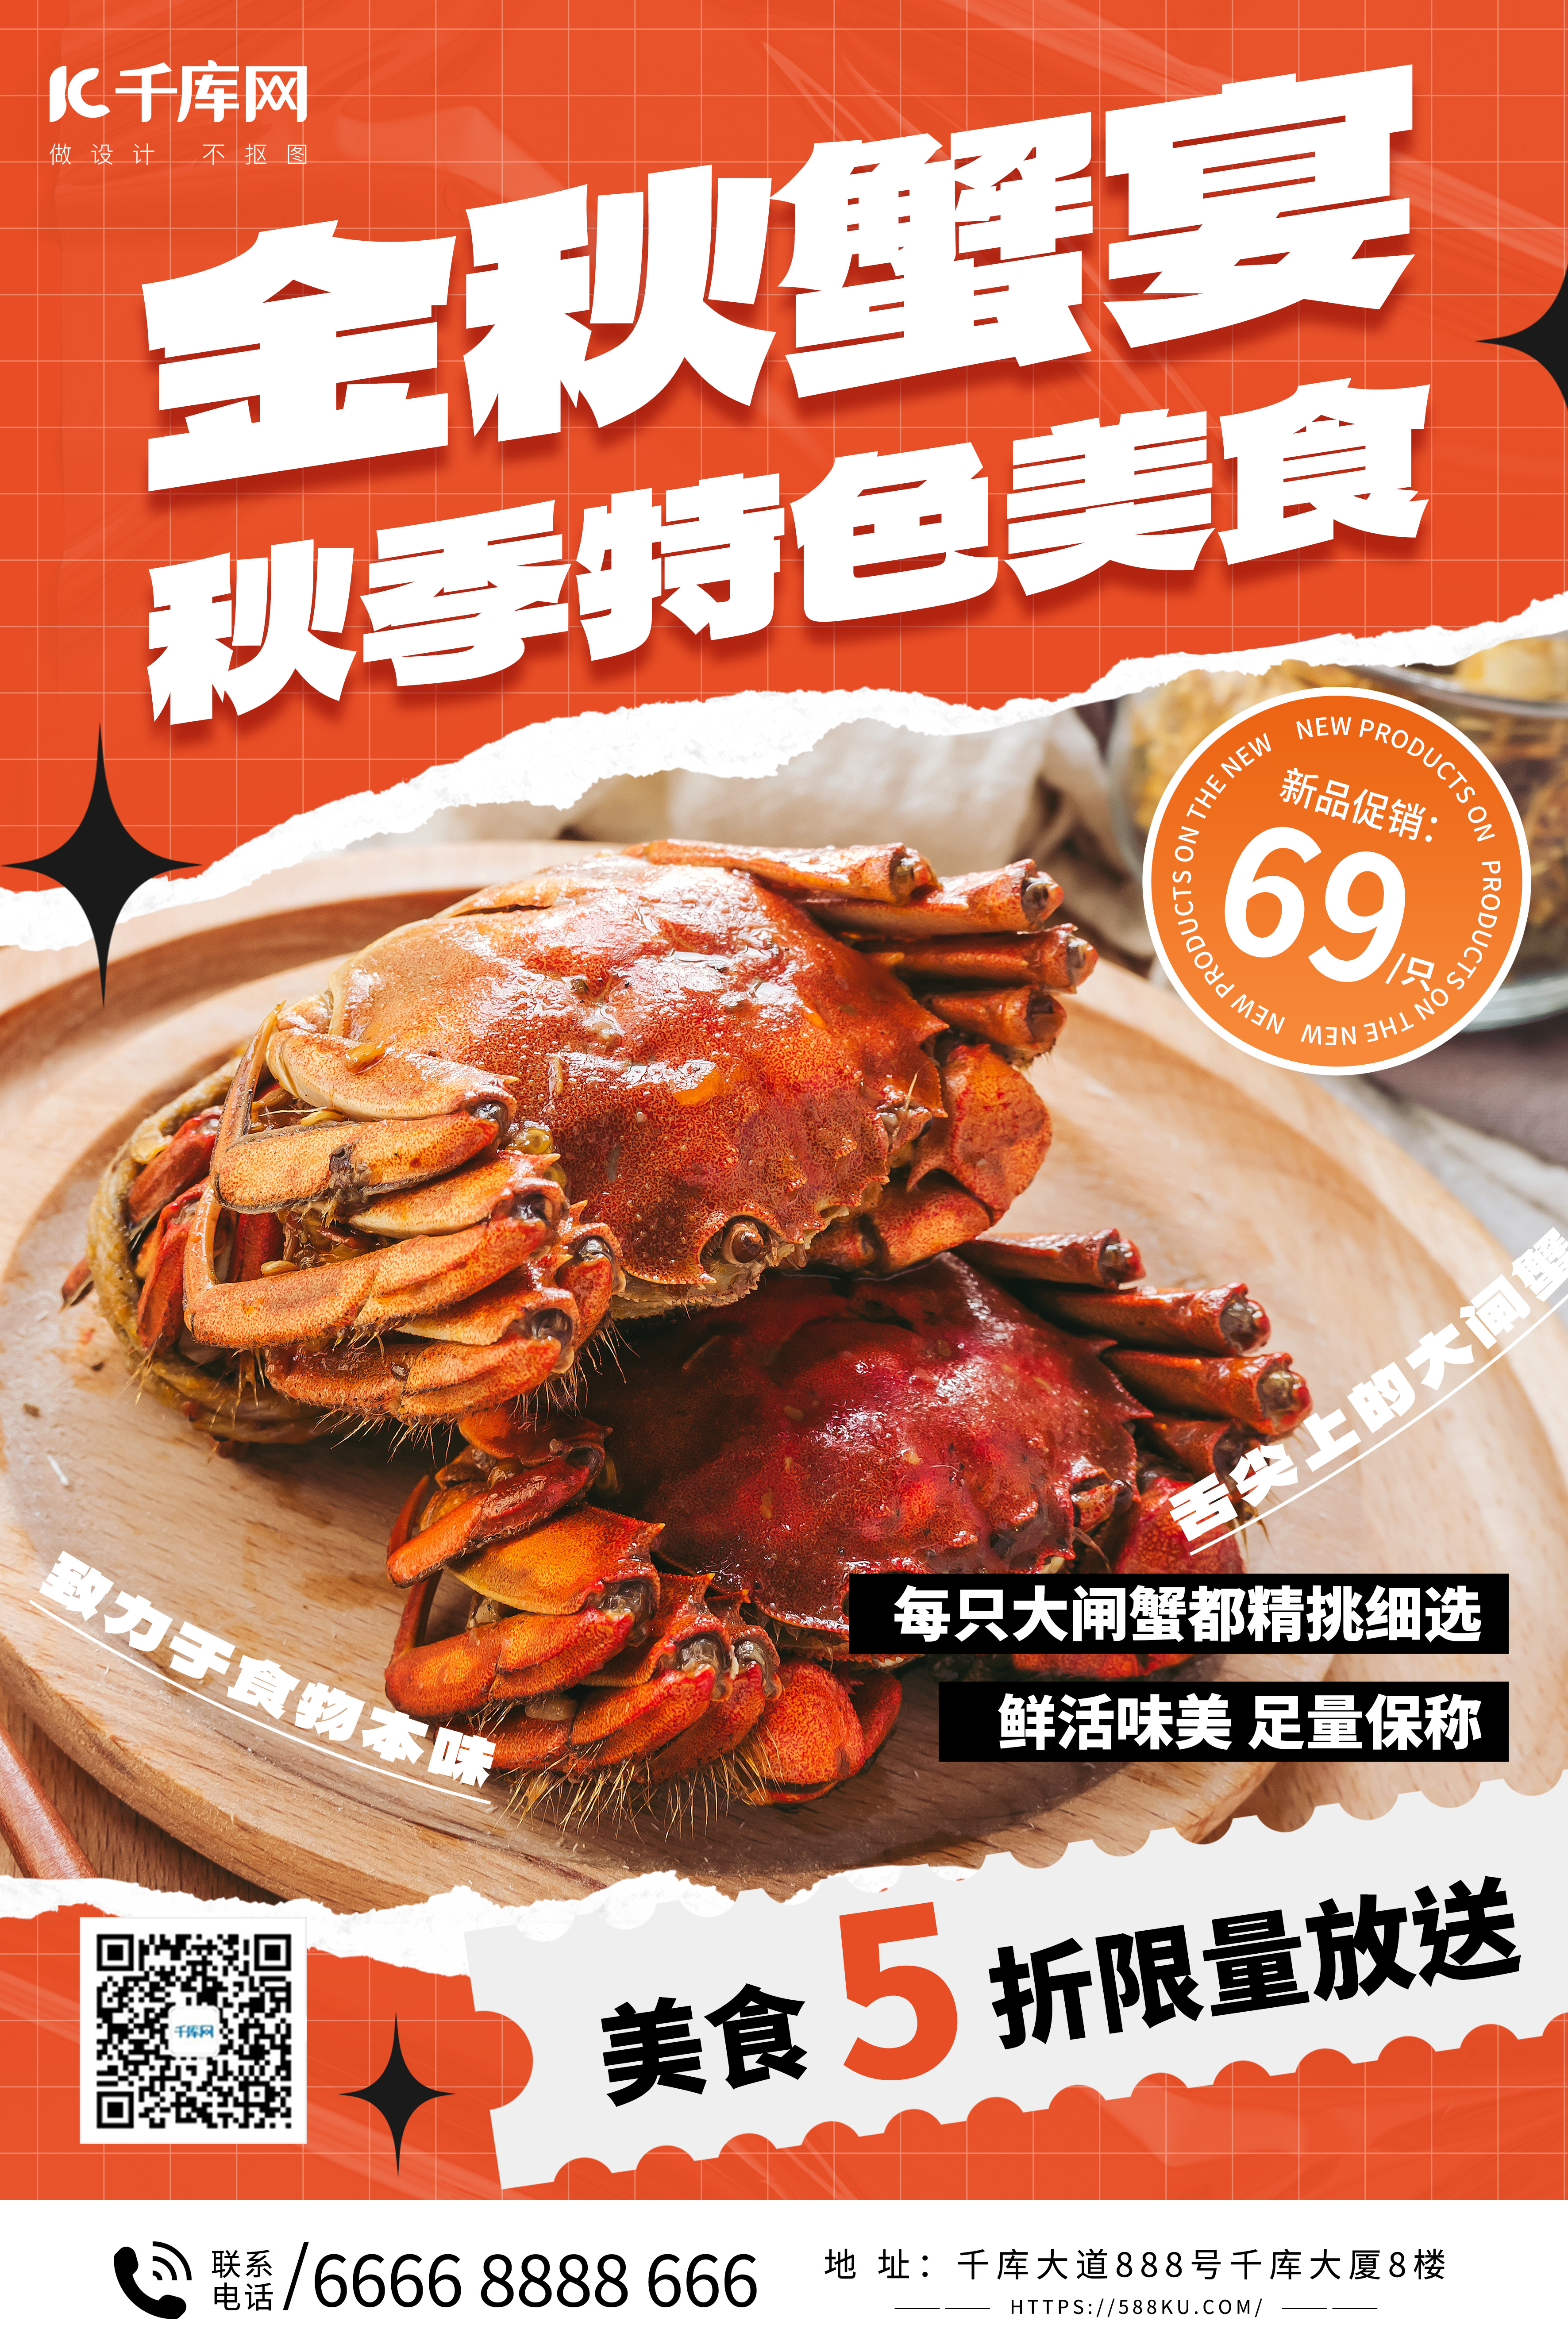 美食大闸蟹活动促销橙色简约海报图片